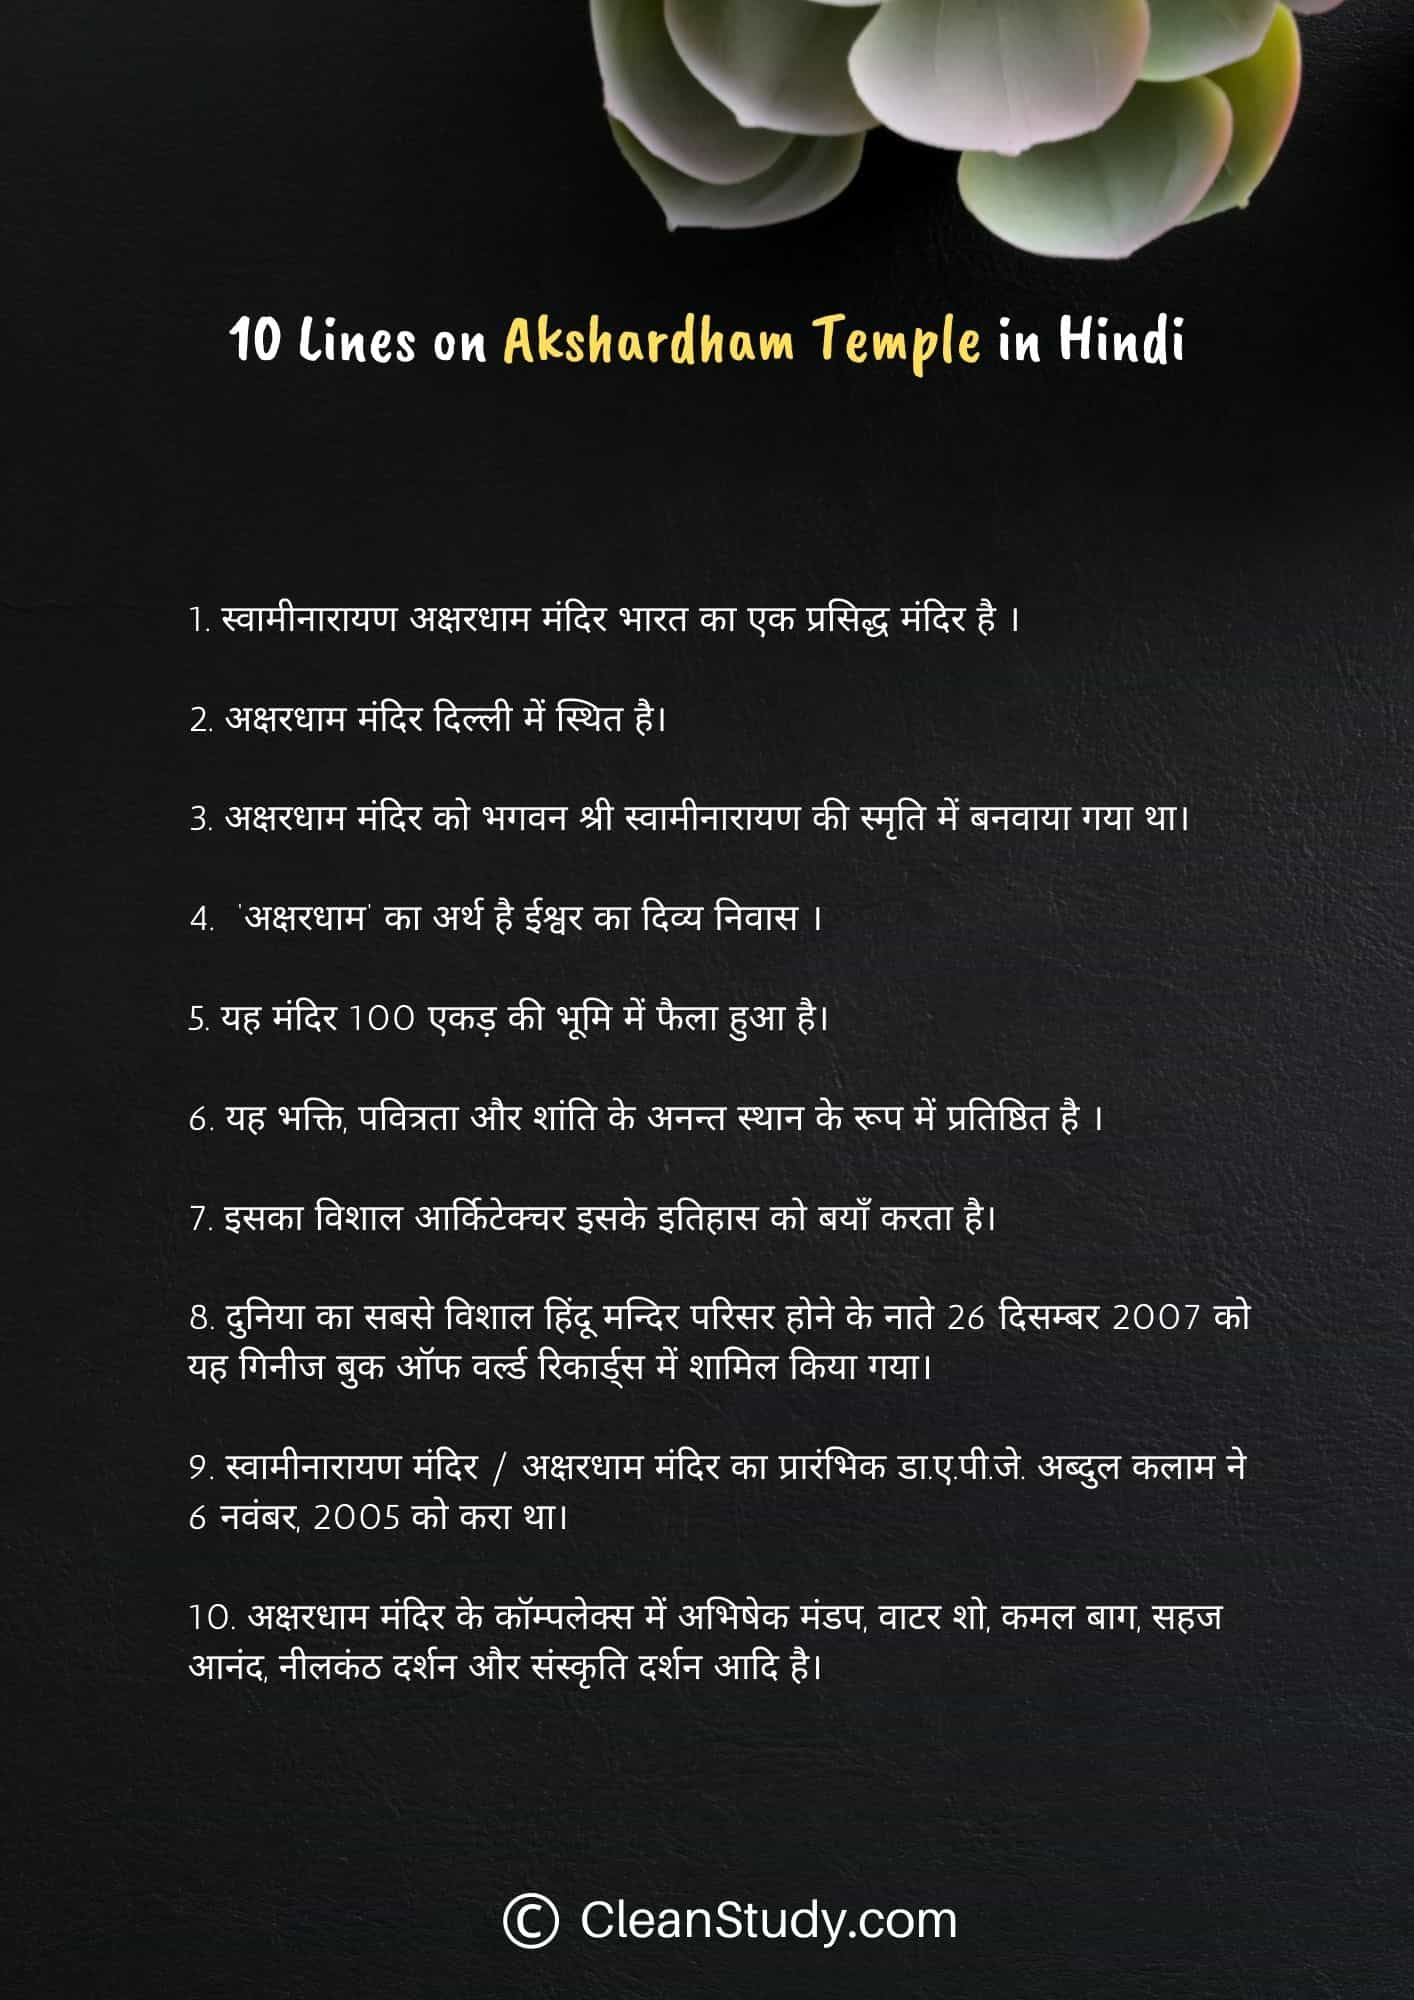 10 Lines on Akshardham Temple in Hindi